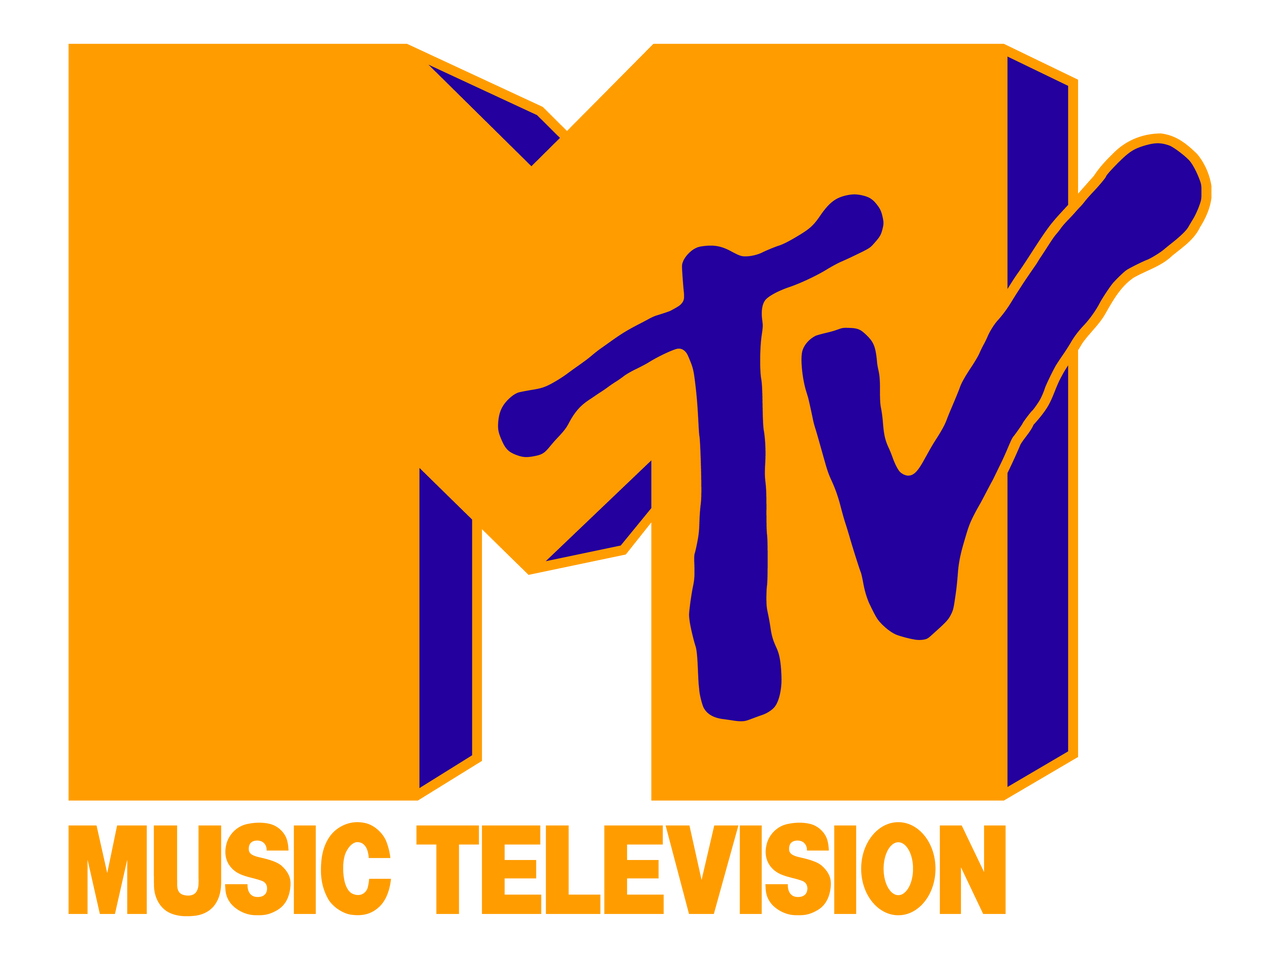 MTV Logo (1990 MTV Video Music Awards Variant) by Gabediva04 on DeviantArt